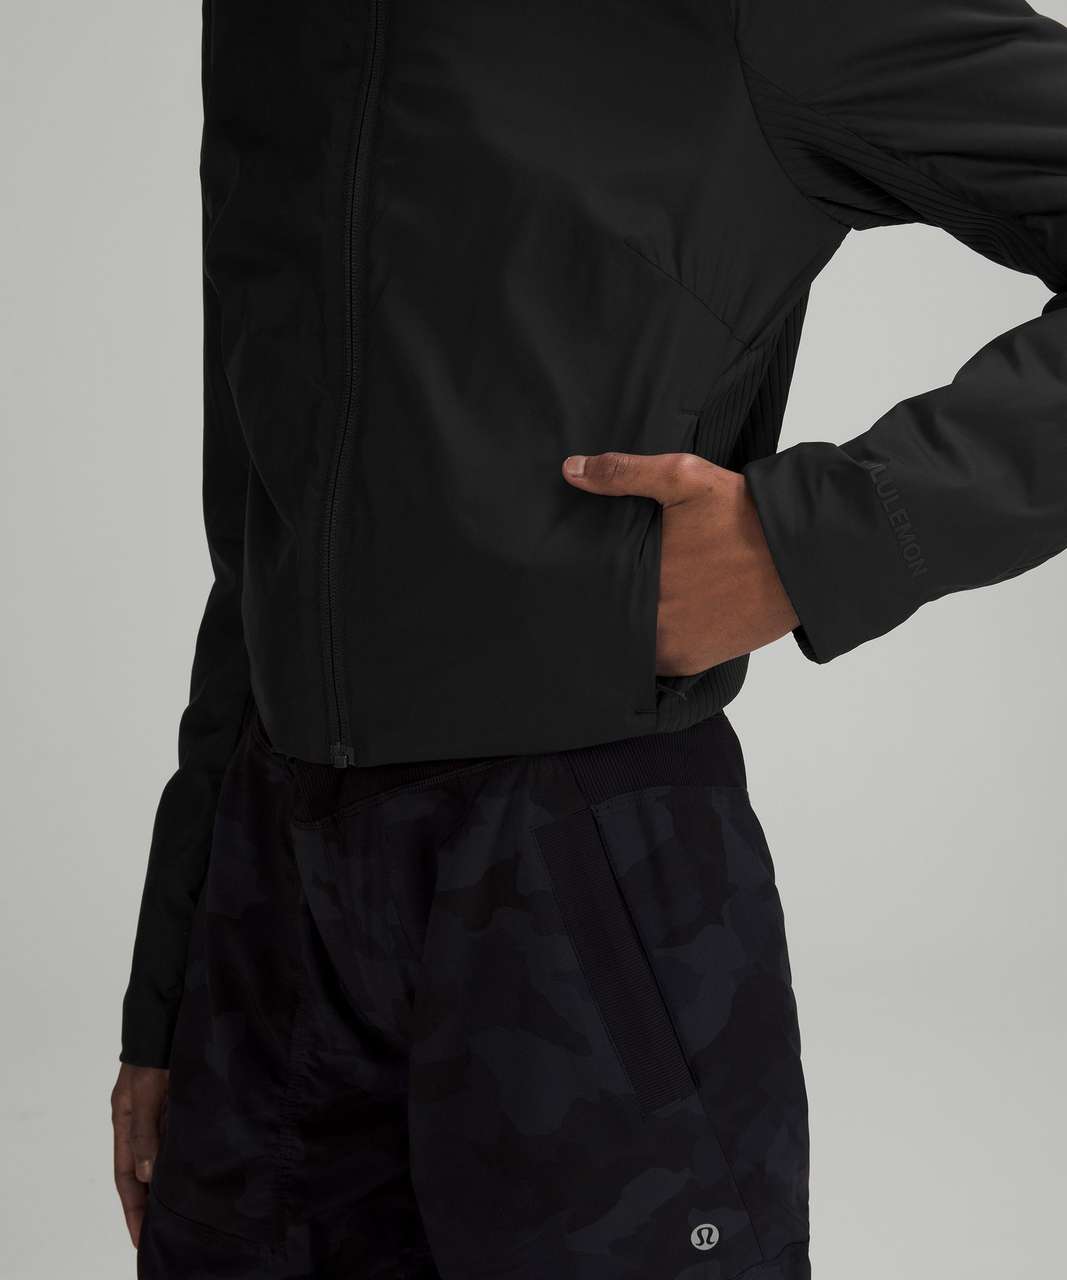 Lululemon SoftMatte Insulated Cropped Jacket - Black